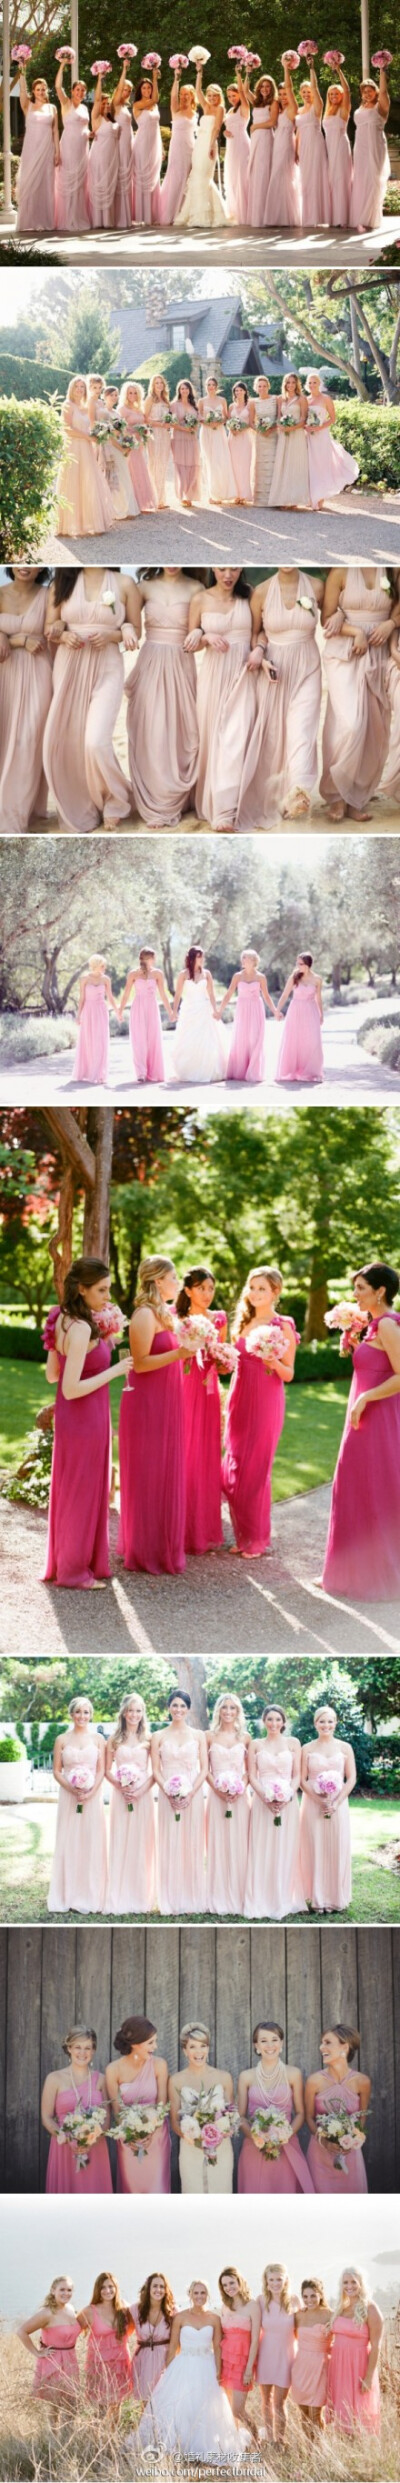 粉红色的伴娘们，强大且亮丽 ,详图请点:http://t.cn/zWIafPr (到likewed.com为你的婚礼寻找灵感)